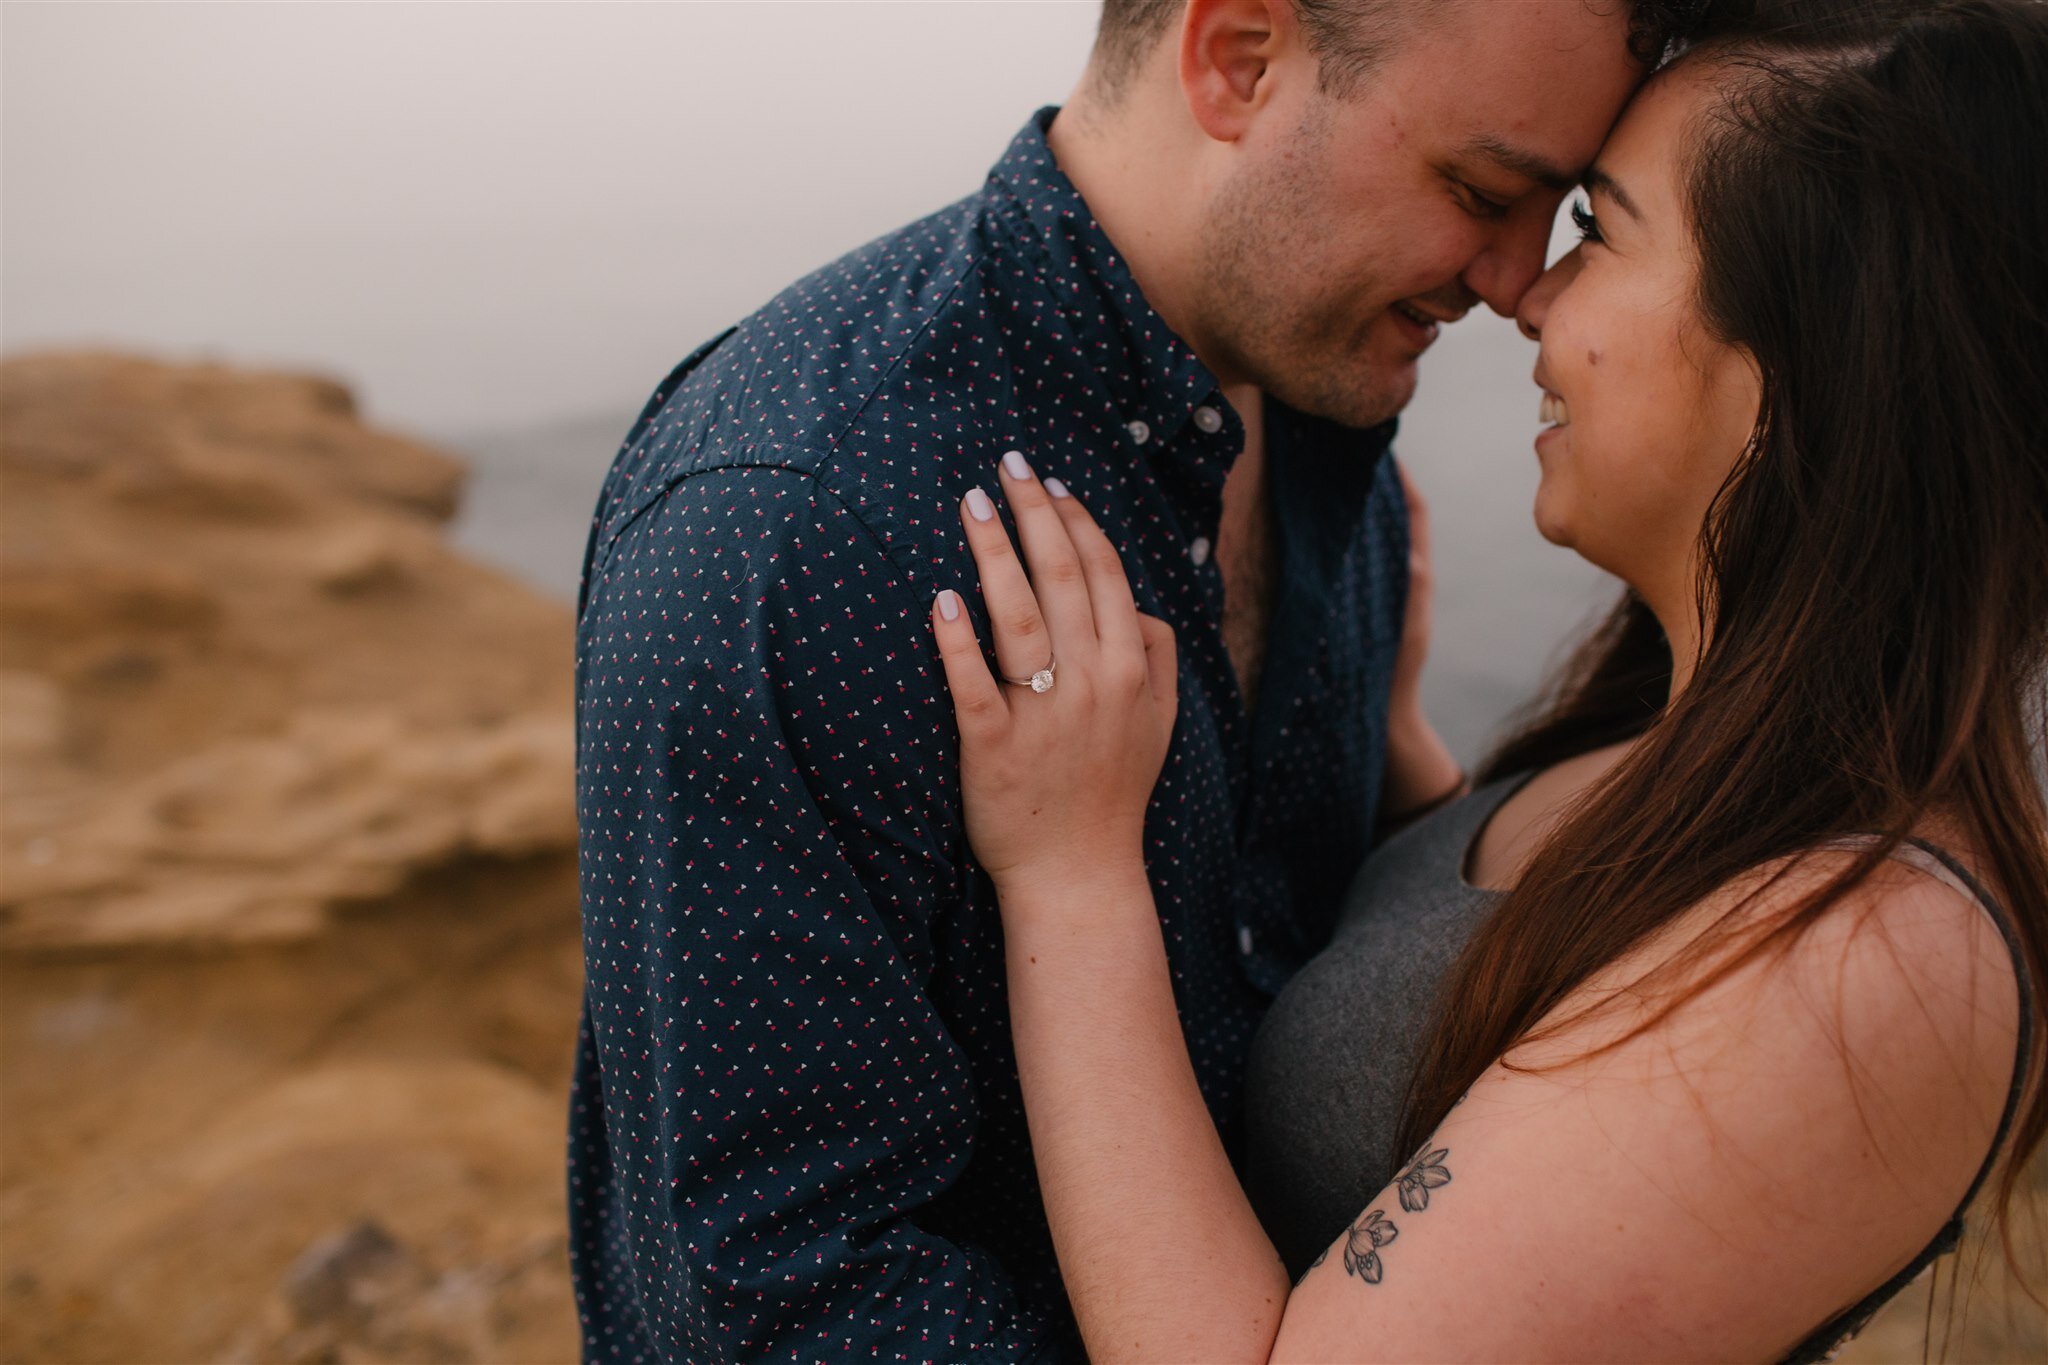 sunset-cliffs-san-diego-surprise-proposal-engagement-socal-southern-california-wedding-elopement-photographer-beach-ocean-14.jpg